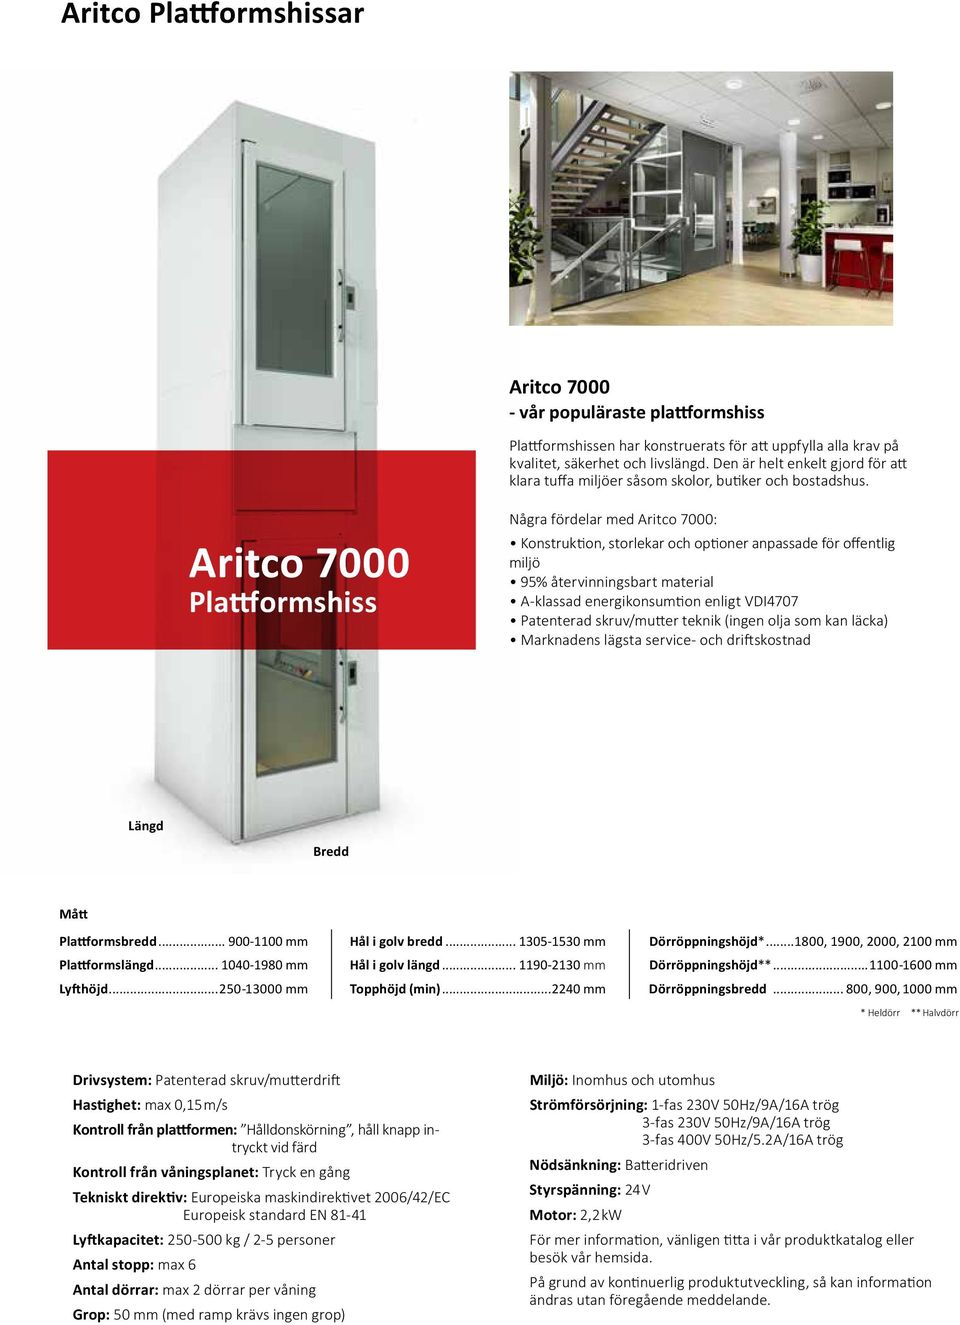 Aritco 7000 Plattformshiss Några fördelar med Aritco 7000: Konstruktion, storlekar och optioner anpassade för offentlig miljö 95% återvinningsbart material A-klassad energikonsumtion enligt VDI4707